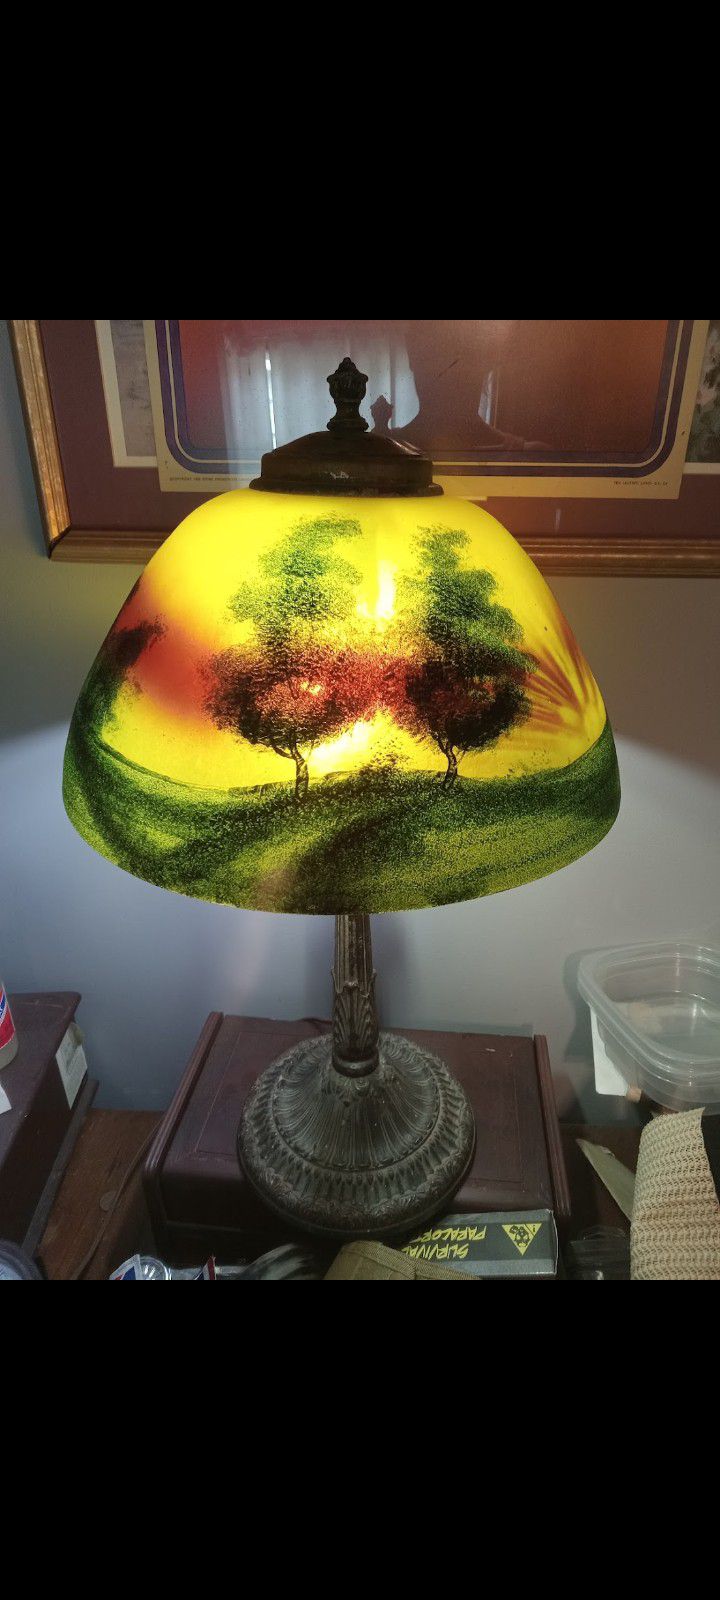 Antique Phoenix Reverse Painted Lamp